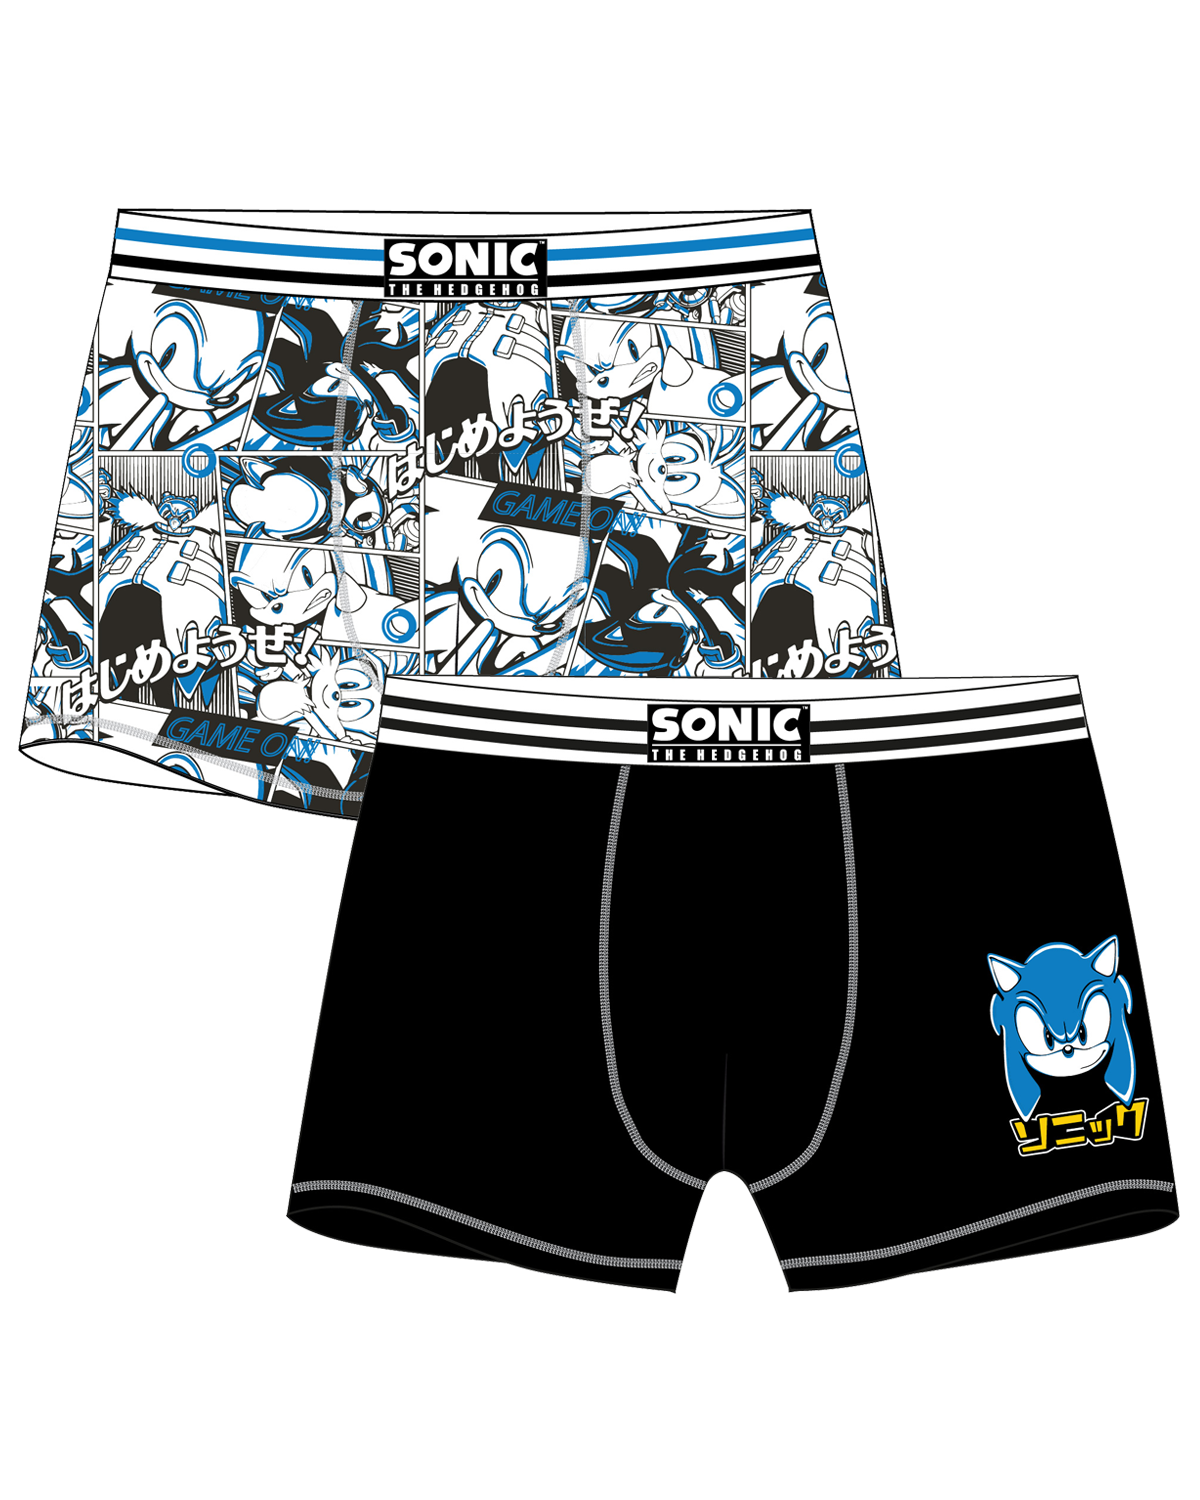 Ježek SONIC - licence Pánské boxerky - Ježek Sonic 5333158, bílá / černá Barva: Mix barev, Velikost: XL